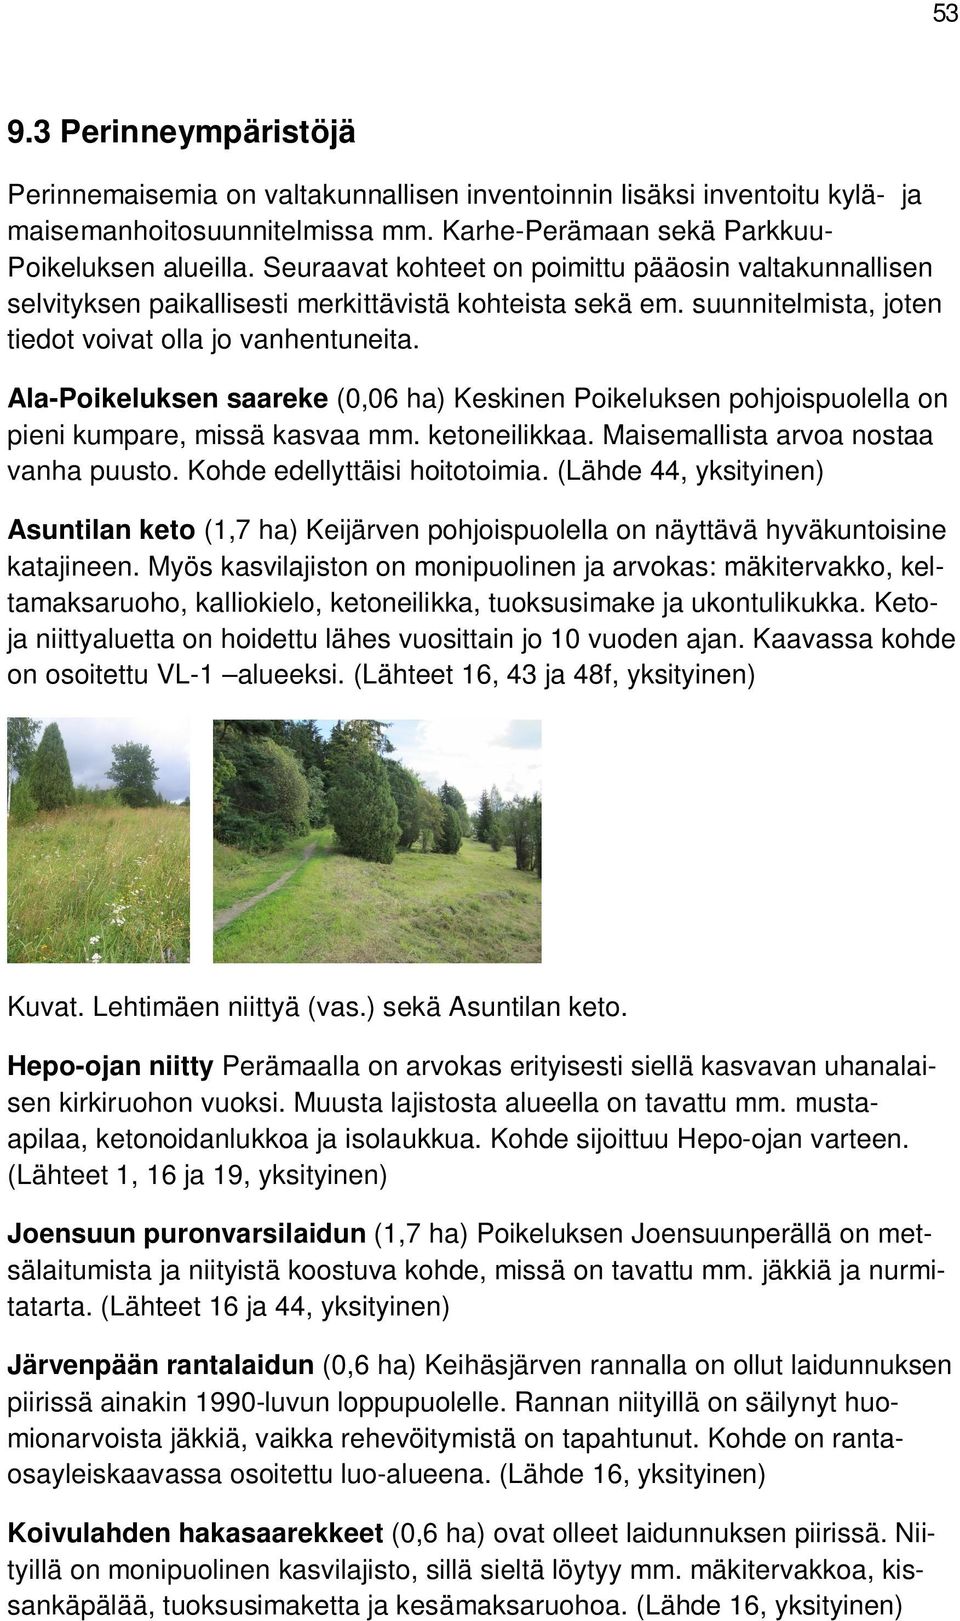 Ala-Poikeluksen saareke (0,06 ha) Keskinen Poikeluksen pohjoispuolella on pieni kumpare, missä kasvaa mm. ketoneilikkaa. Maisemallista arvoa nostaa vanha puusto. Kohde edellyttäisi hoitotoimia.